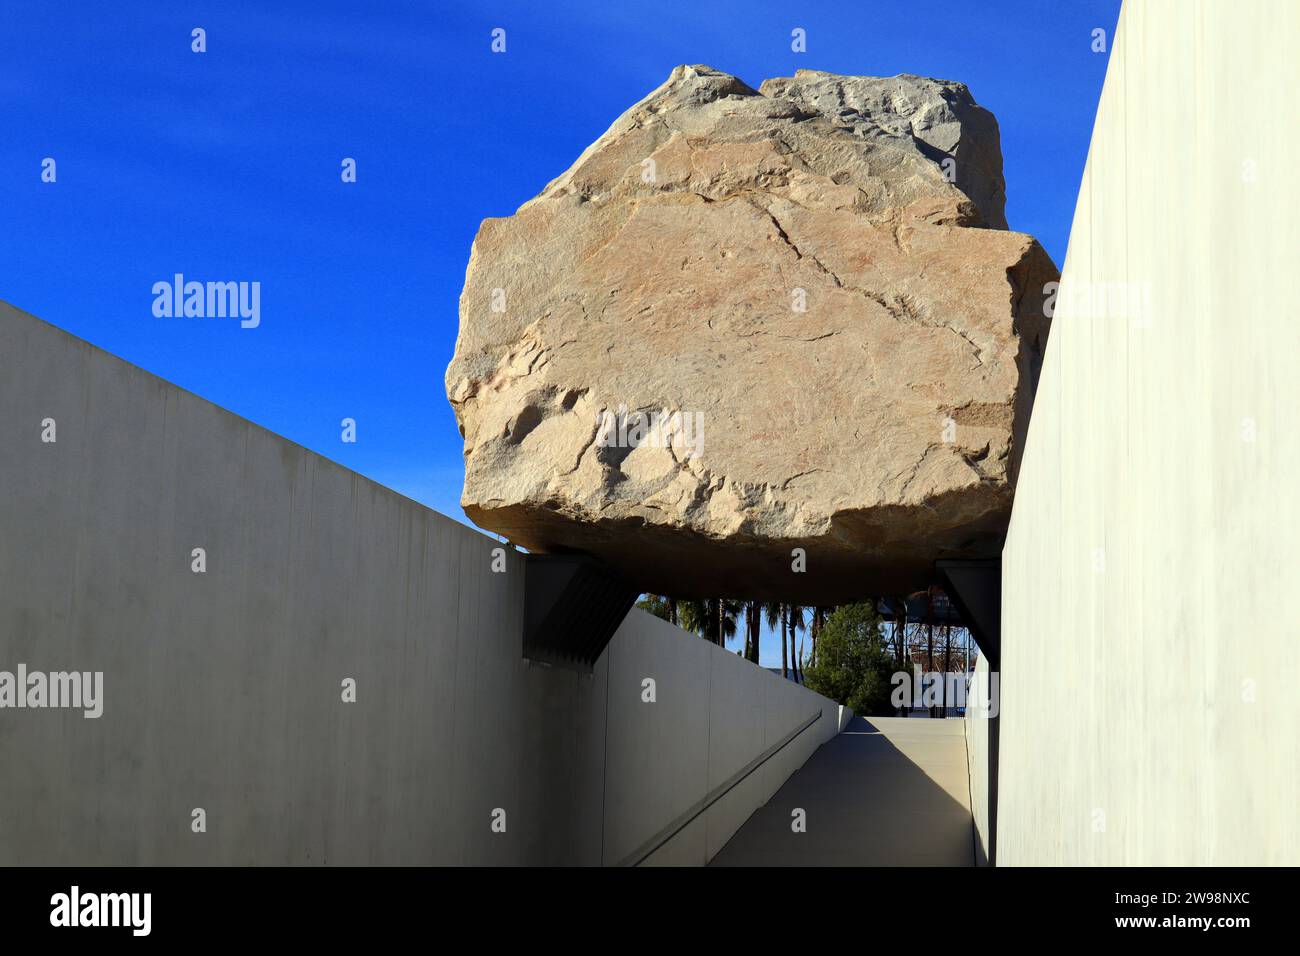 Los Angeles, Californie : public Art MASSE LÉVITÉE une sculpture de Michael Heizer au LACMA, Los Angeles County Museum of Art Banque D'Images